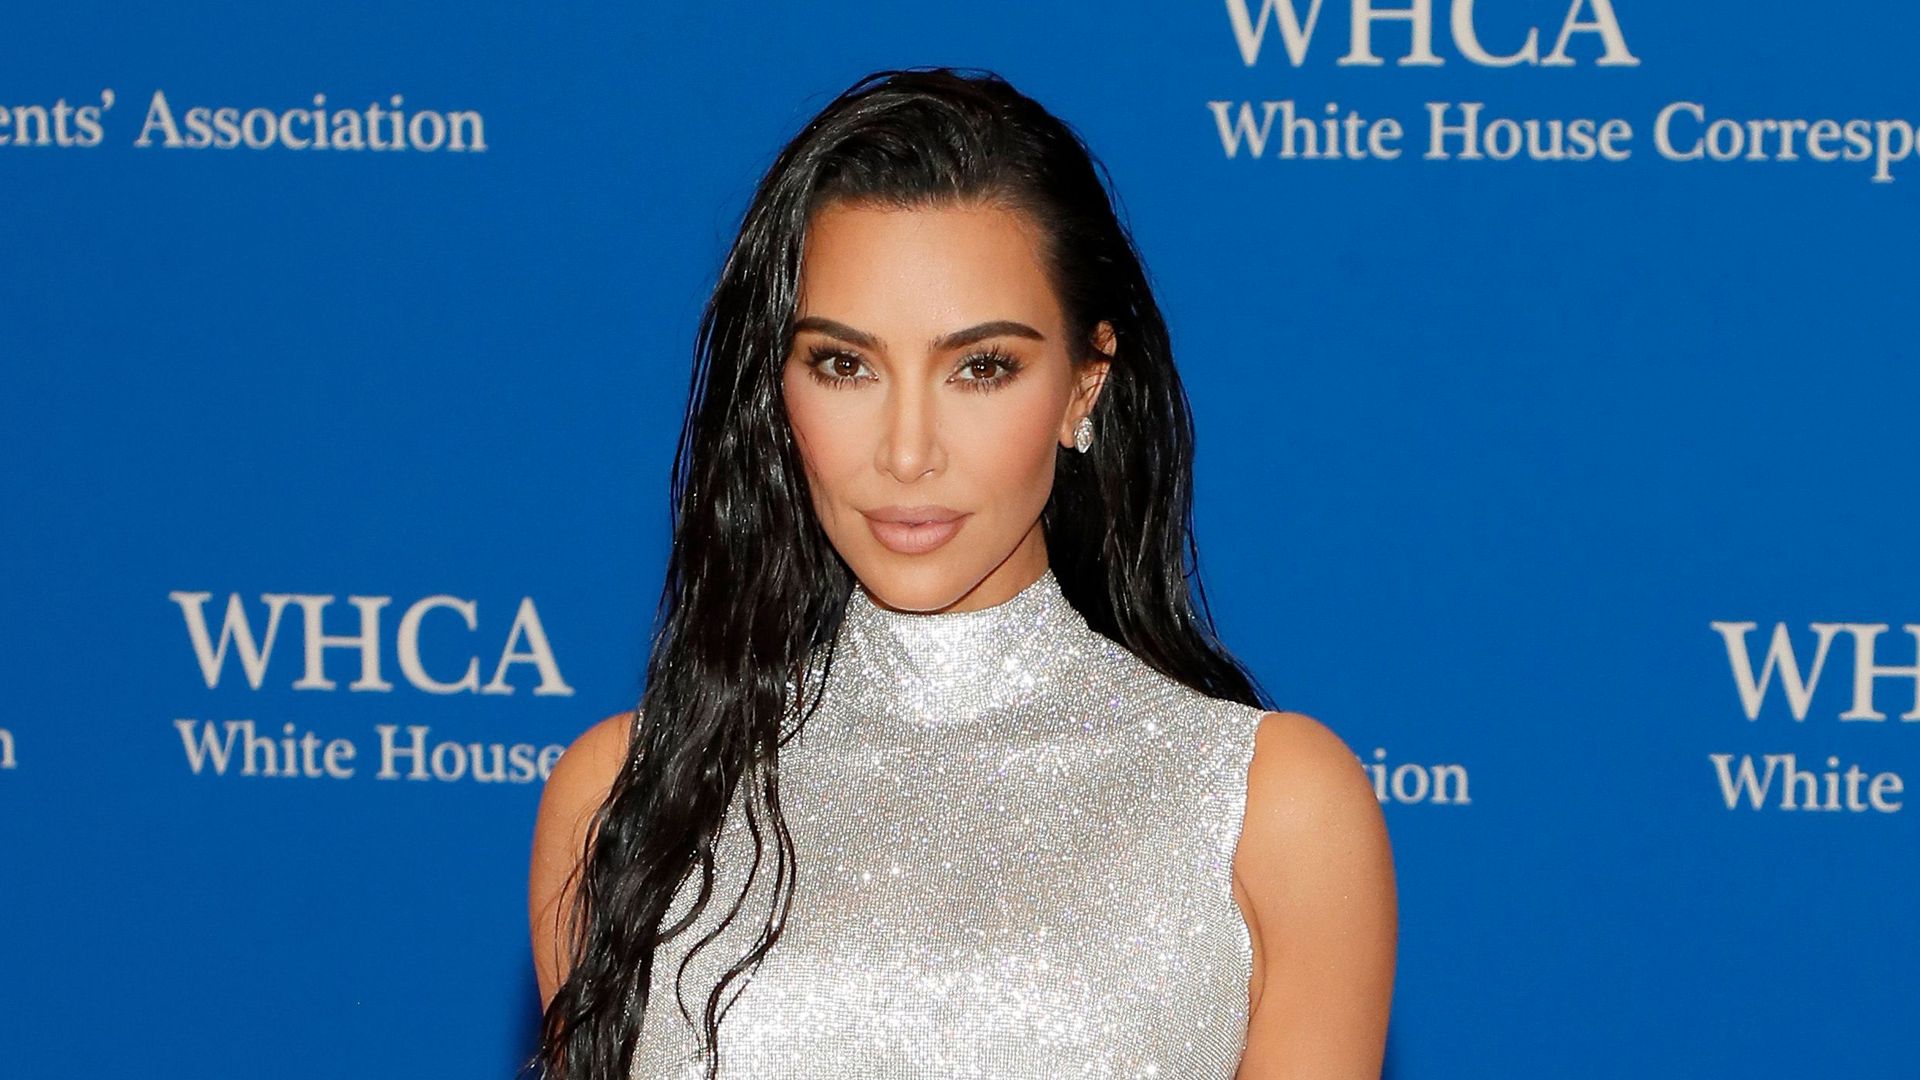 Kim Kardashian attends the 2022 White House Correspondents' Association Dinner at Washington Hilton on April 30, 2022 in Washington, DC